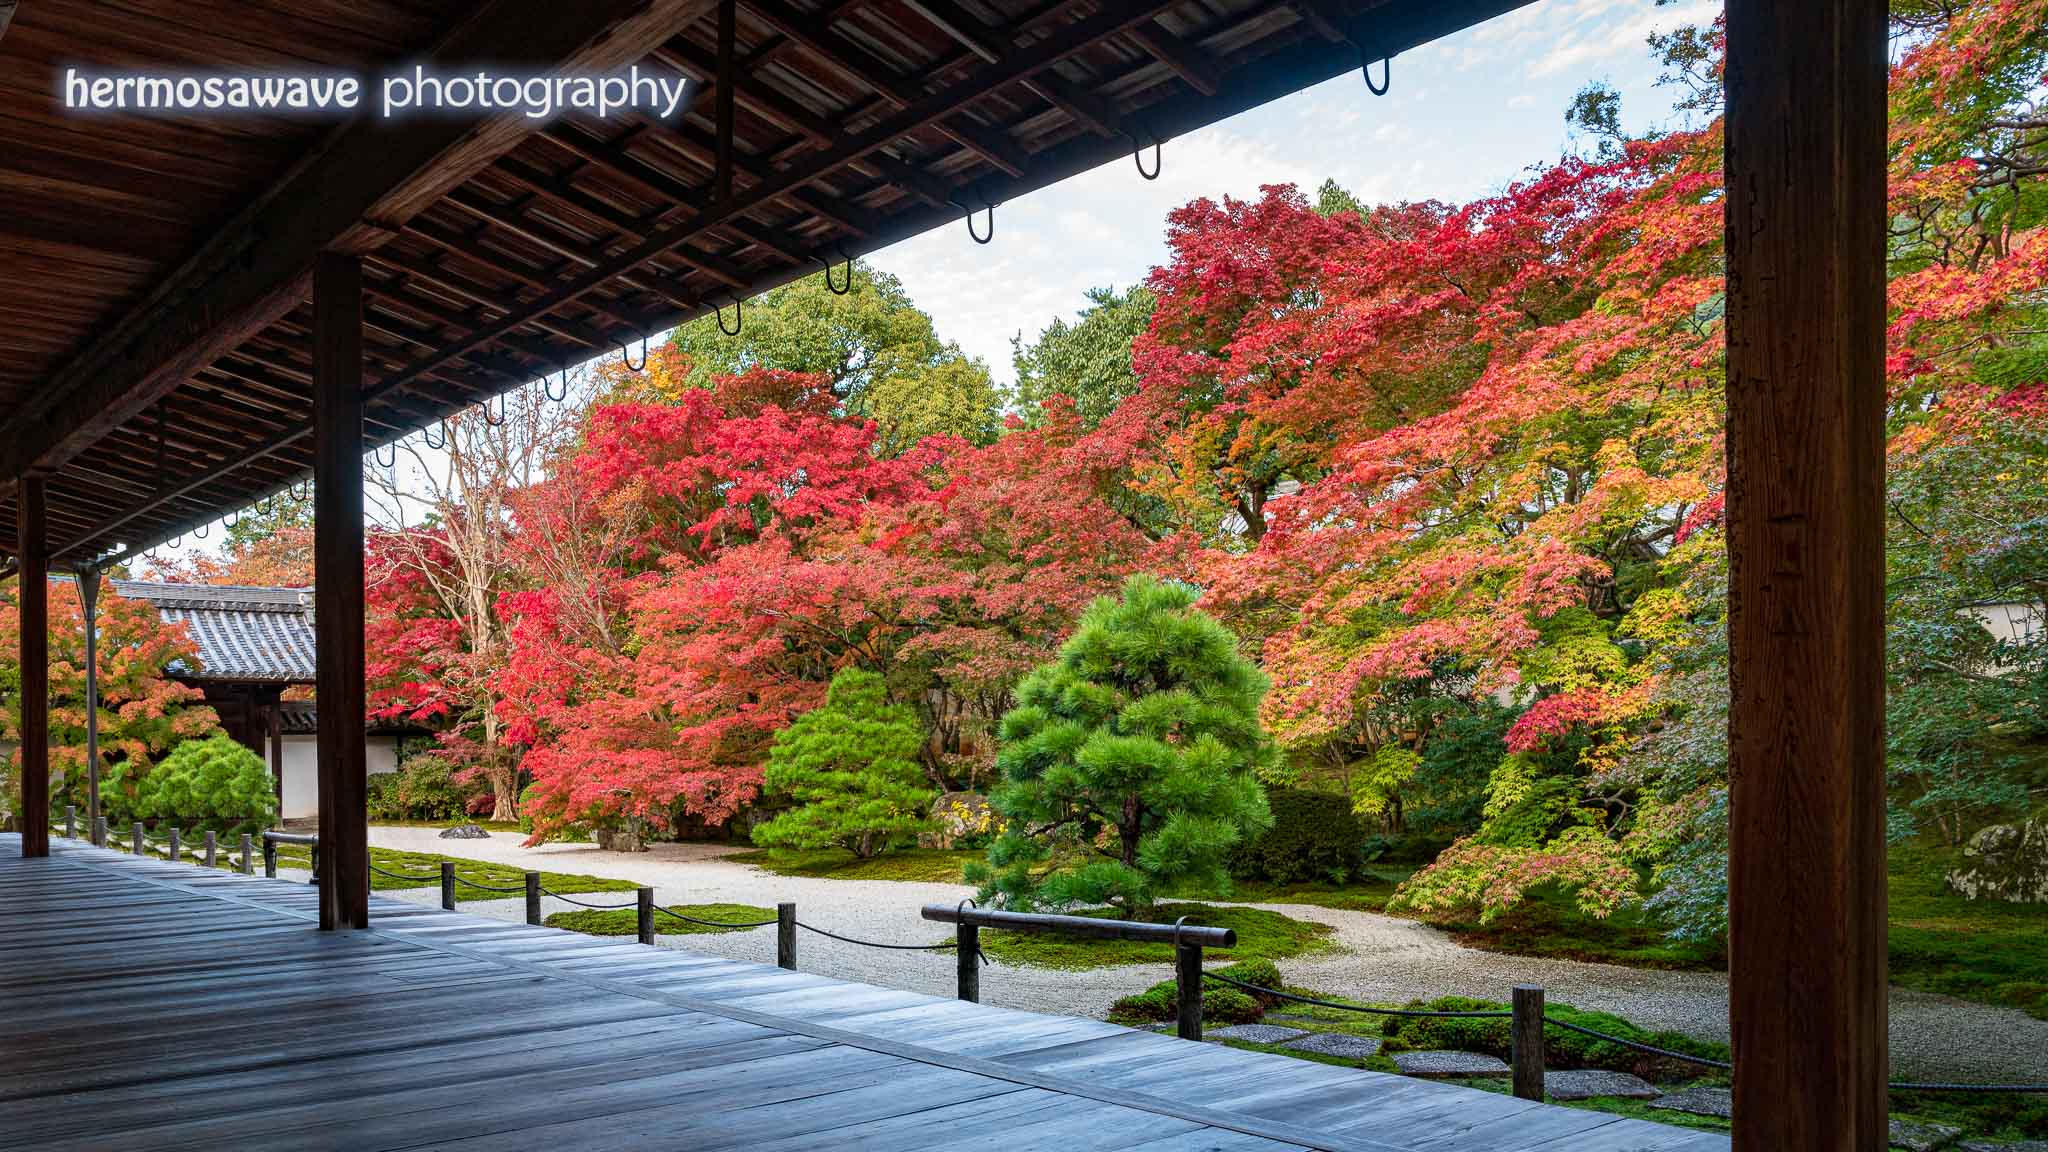 Tenju-an Garden・天授庵の庭園